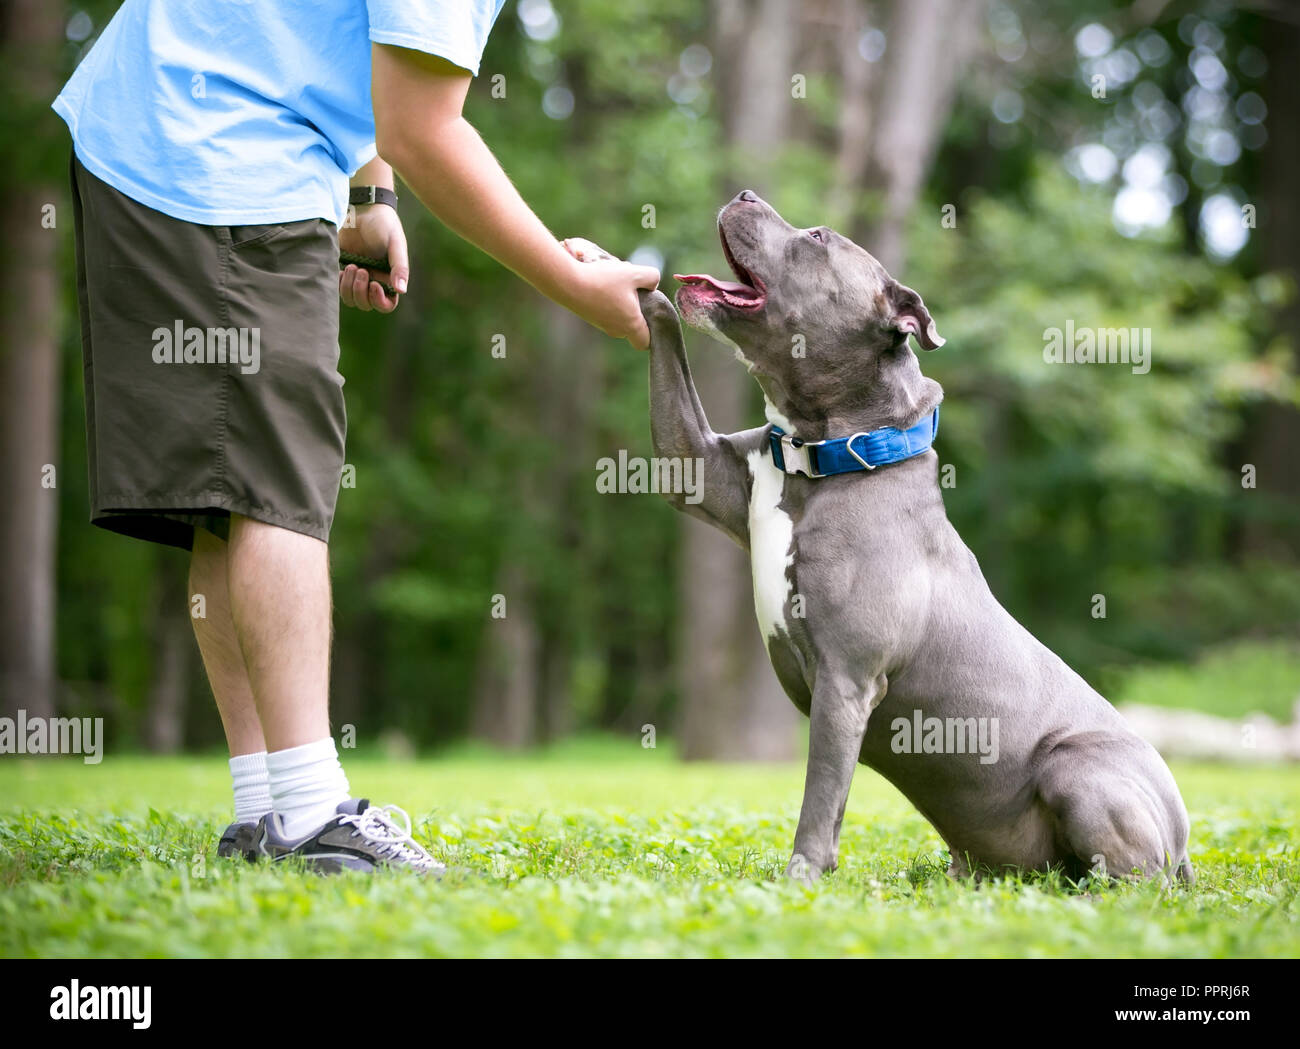 Eine graue und weiße Grube Stier Terrier Mischling Hund bietet seine Pfote zu einer Person Stockfoto